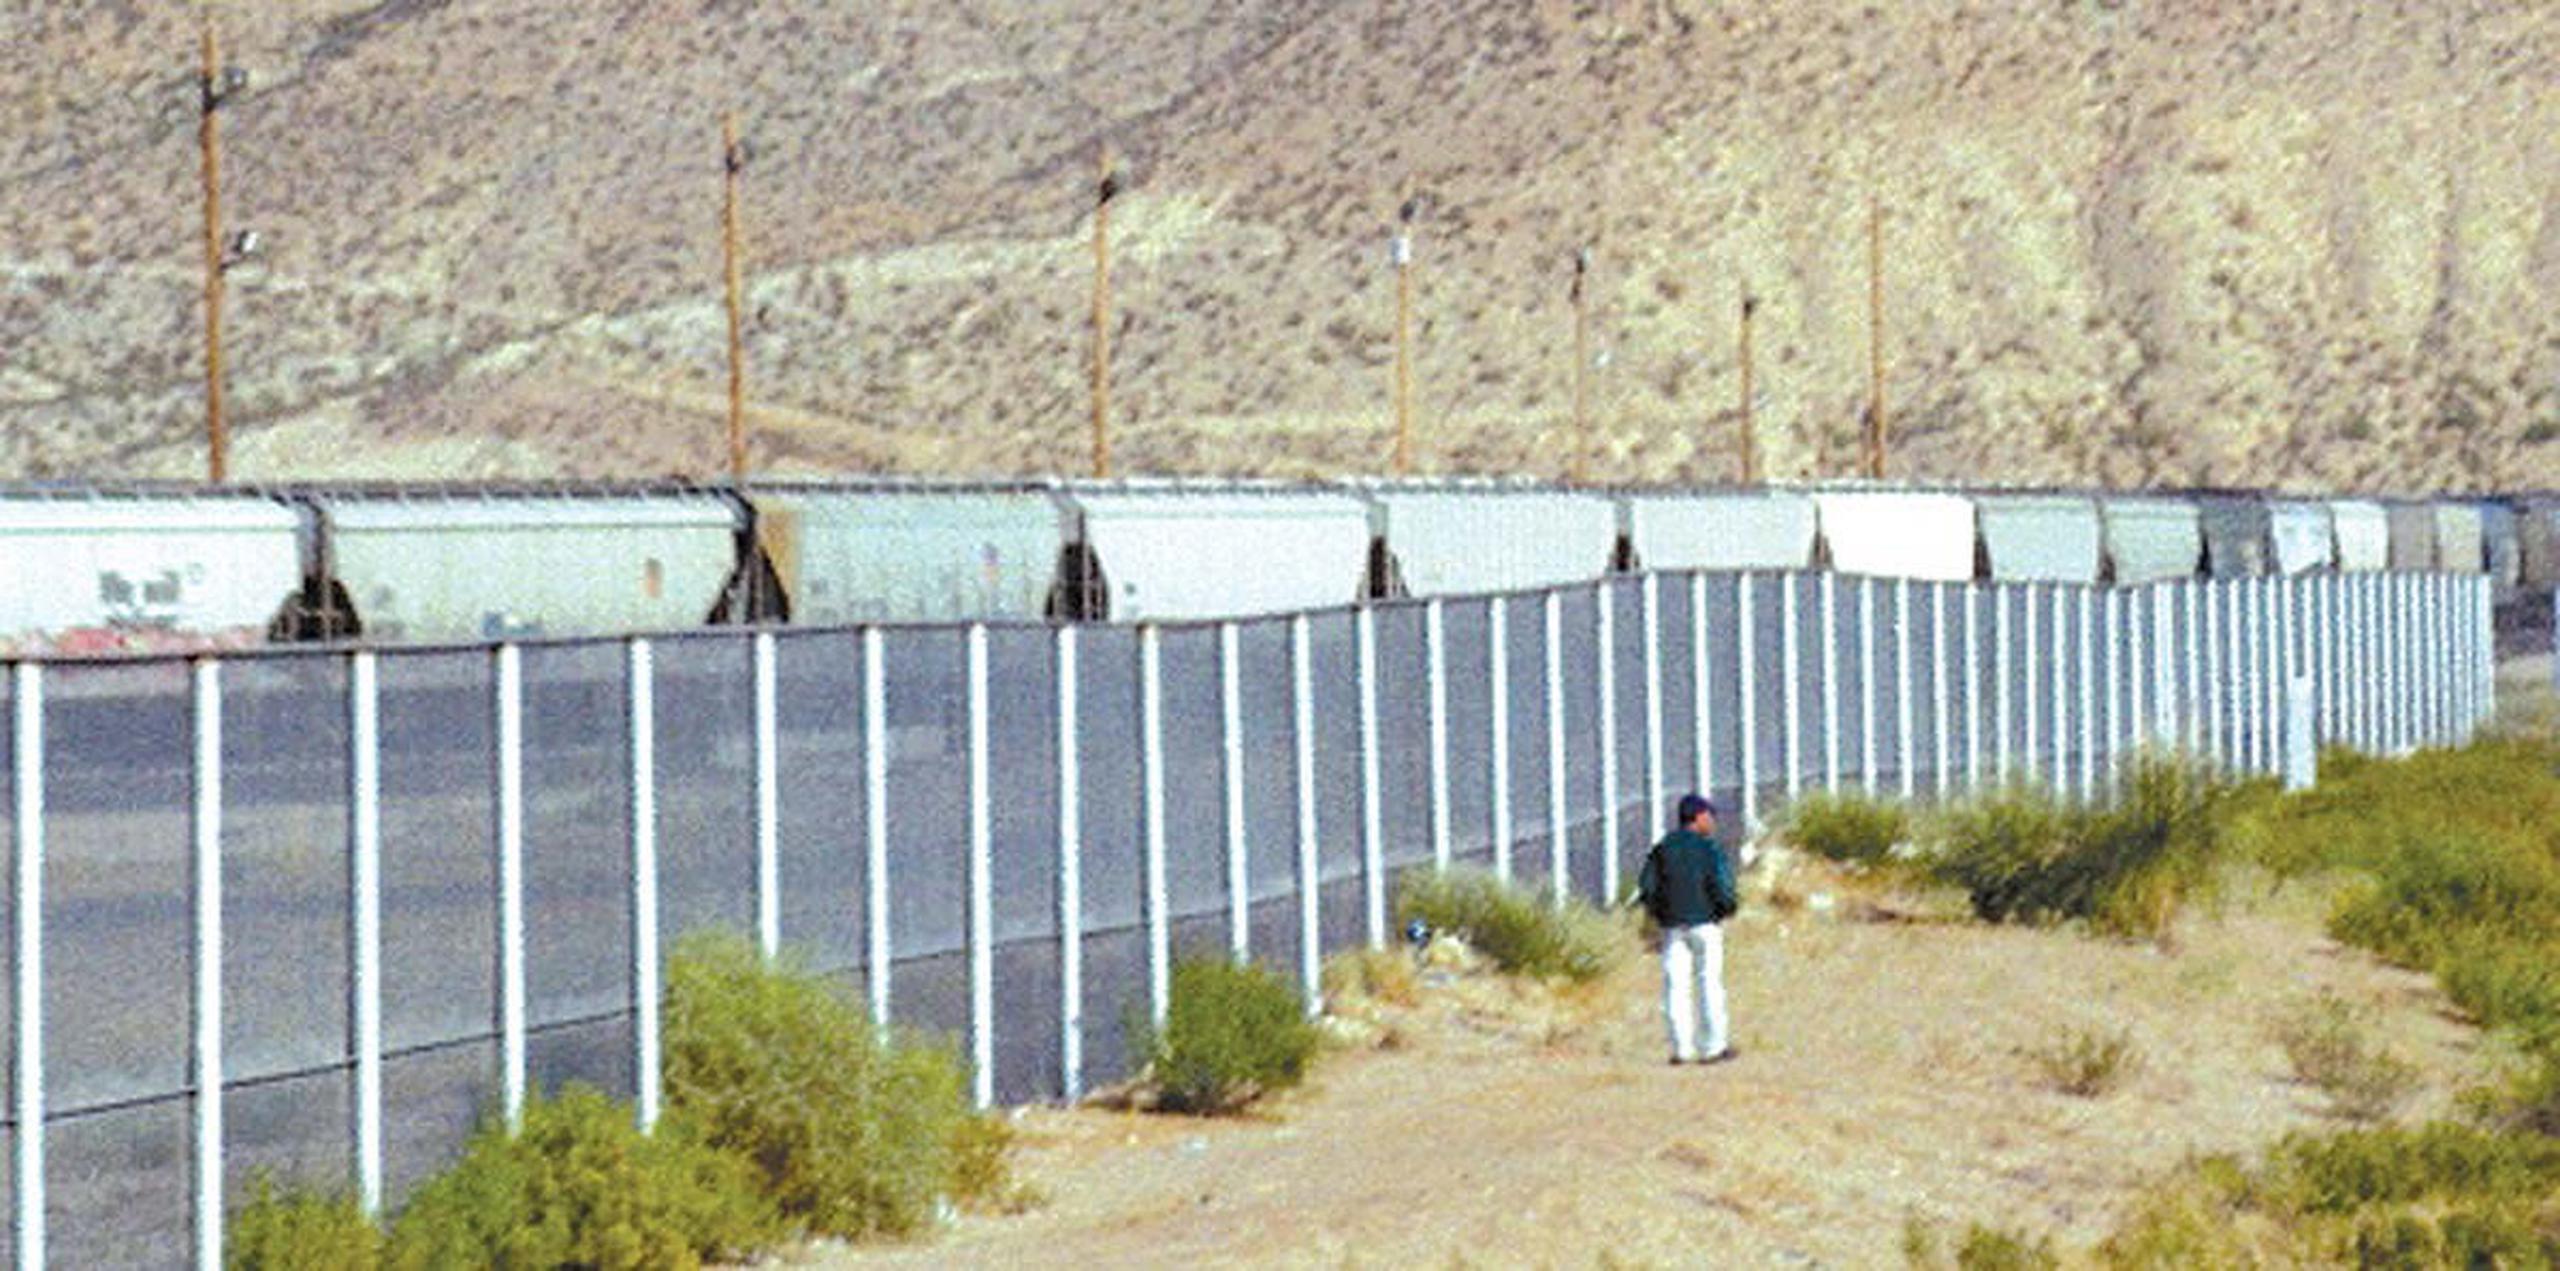 Hasta el momento, se ha construido un muro a lo largo de unas 354 millas en la franja fronteriza de California, Arizona, Nuevo México y partes de Texas. (EFE)